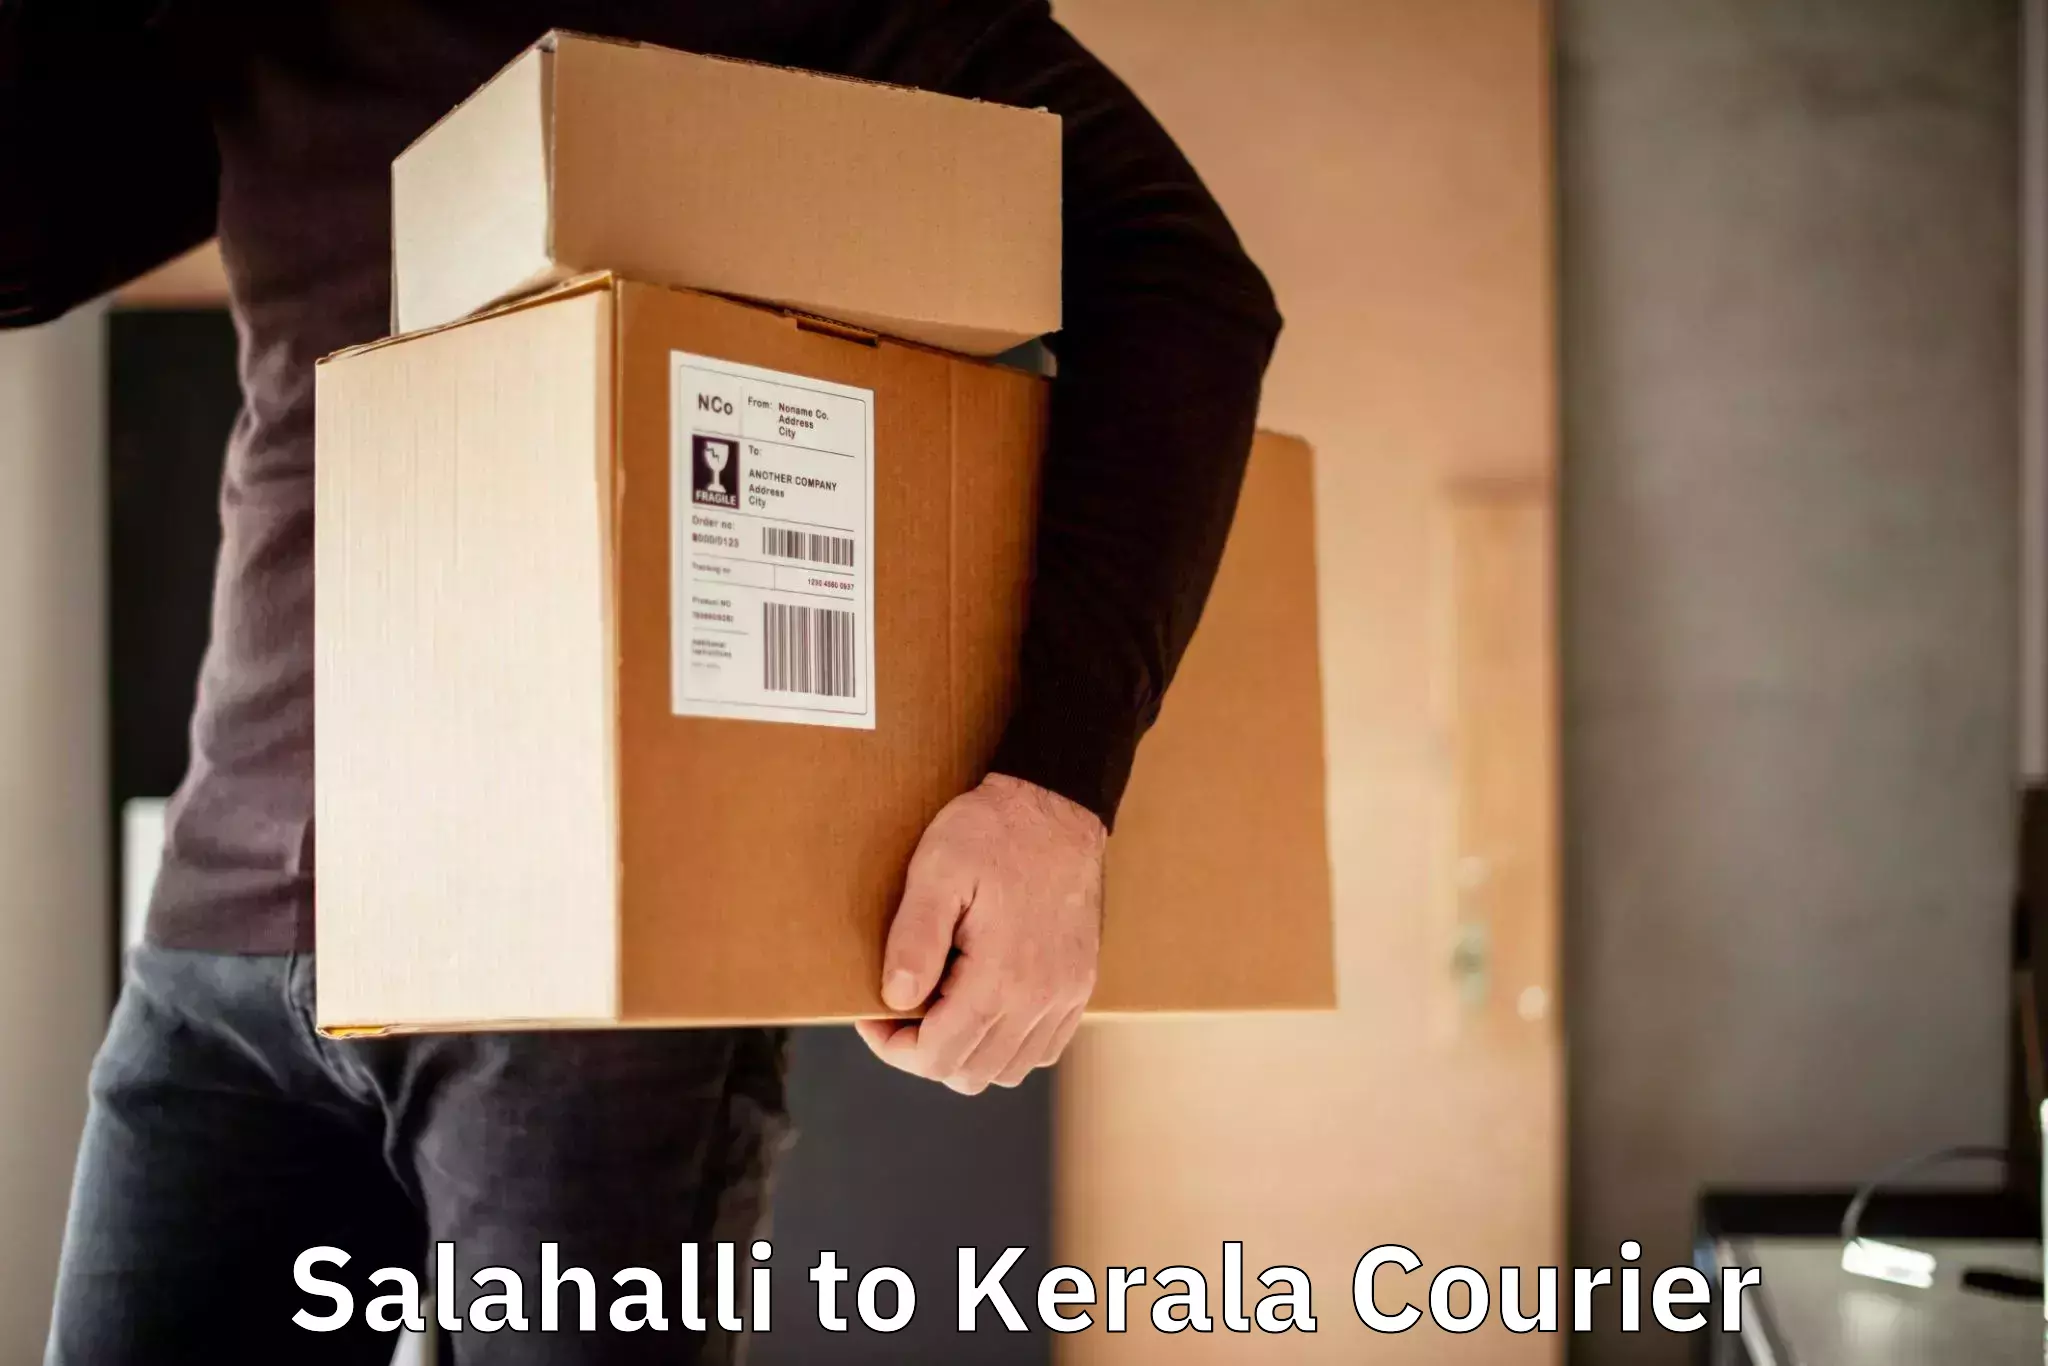 Urgent courier needs Salahalli to Chengannur